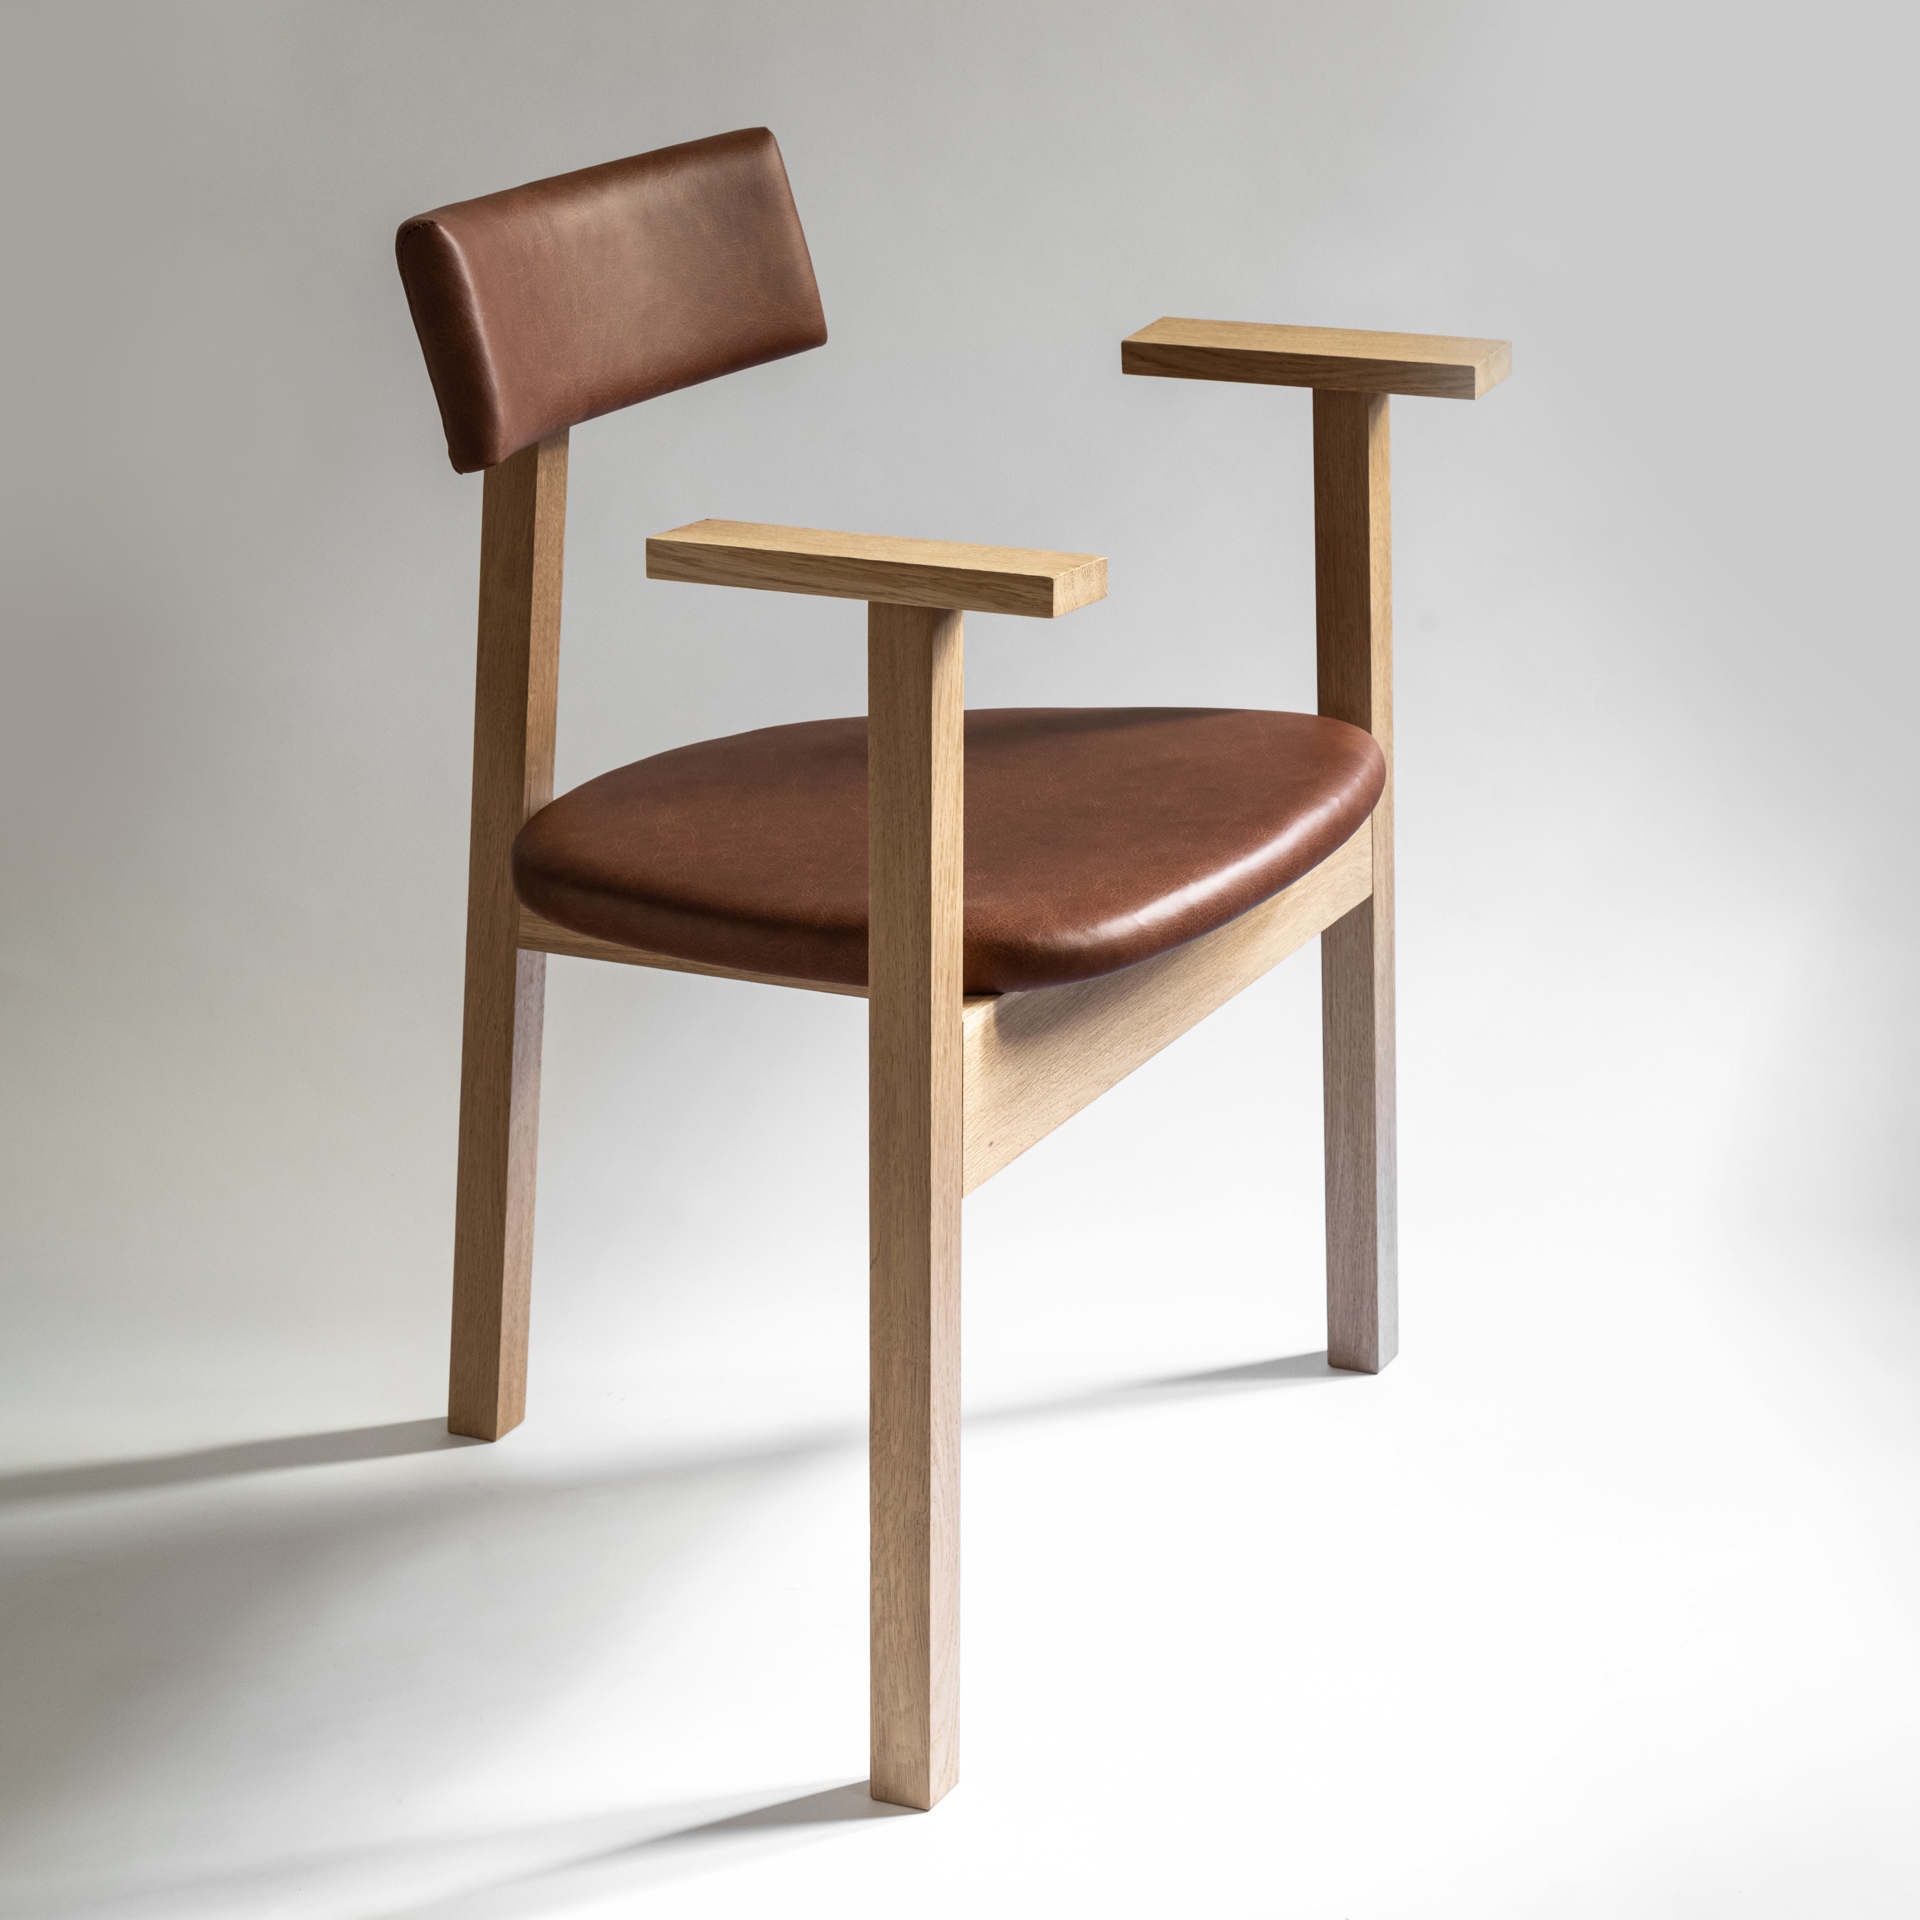 ONYX Műhely szék – koncepció terv: URBA, gyártmányterv: KOMOK, termékfejlesztés és gyártás: KOMOK